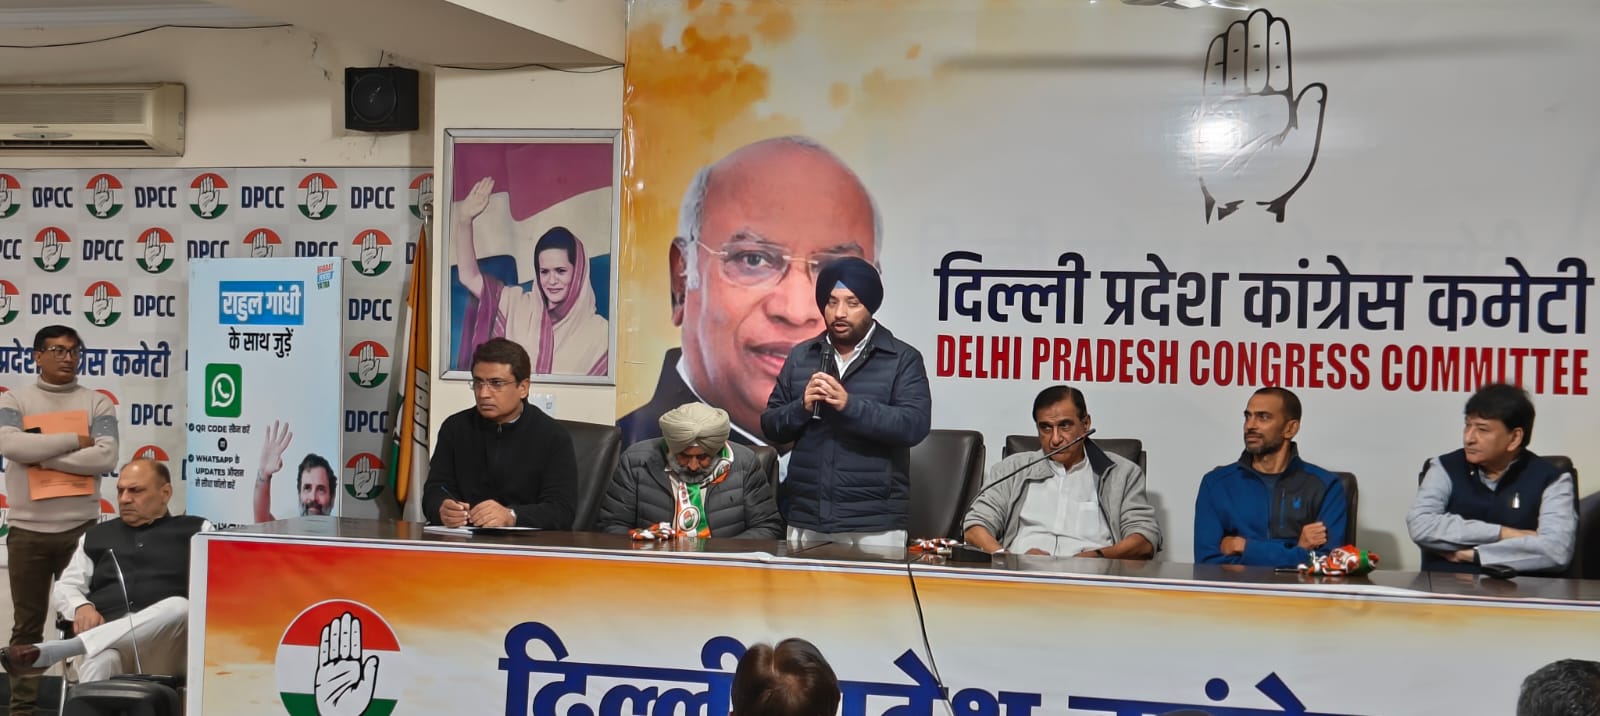 प्रदेश अध्यक्ष अरविन्दर सिंह लवली की अध्यक्षता में लोकसभा चुनाव की तैयारियों के सिलसिले में प्रदेश कार्यालय दिल्ली के वरिष्ठ नेताओं की बैठक हुई